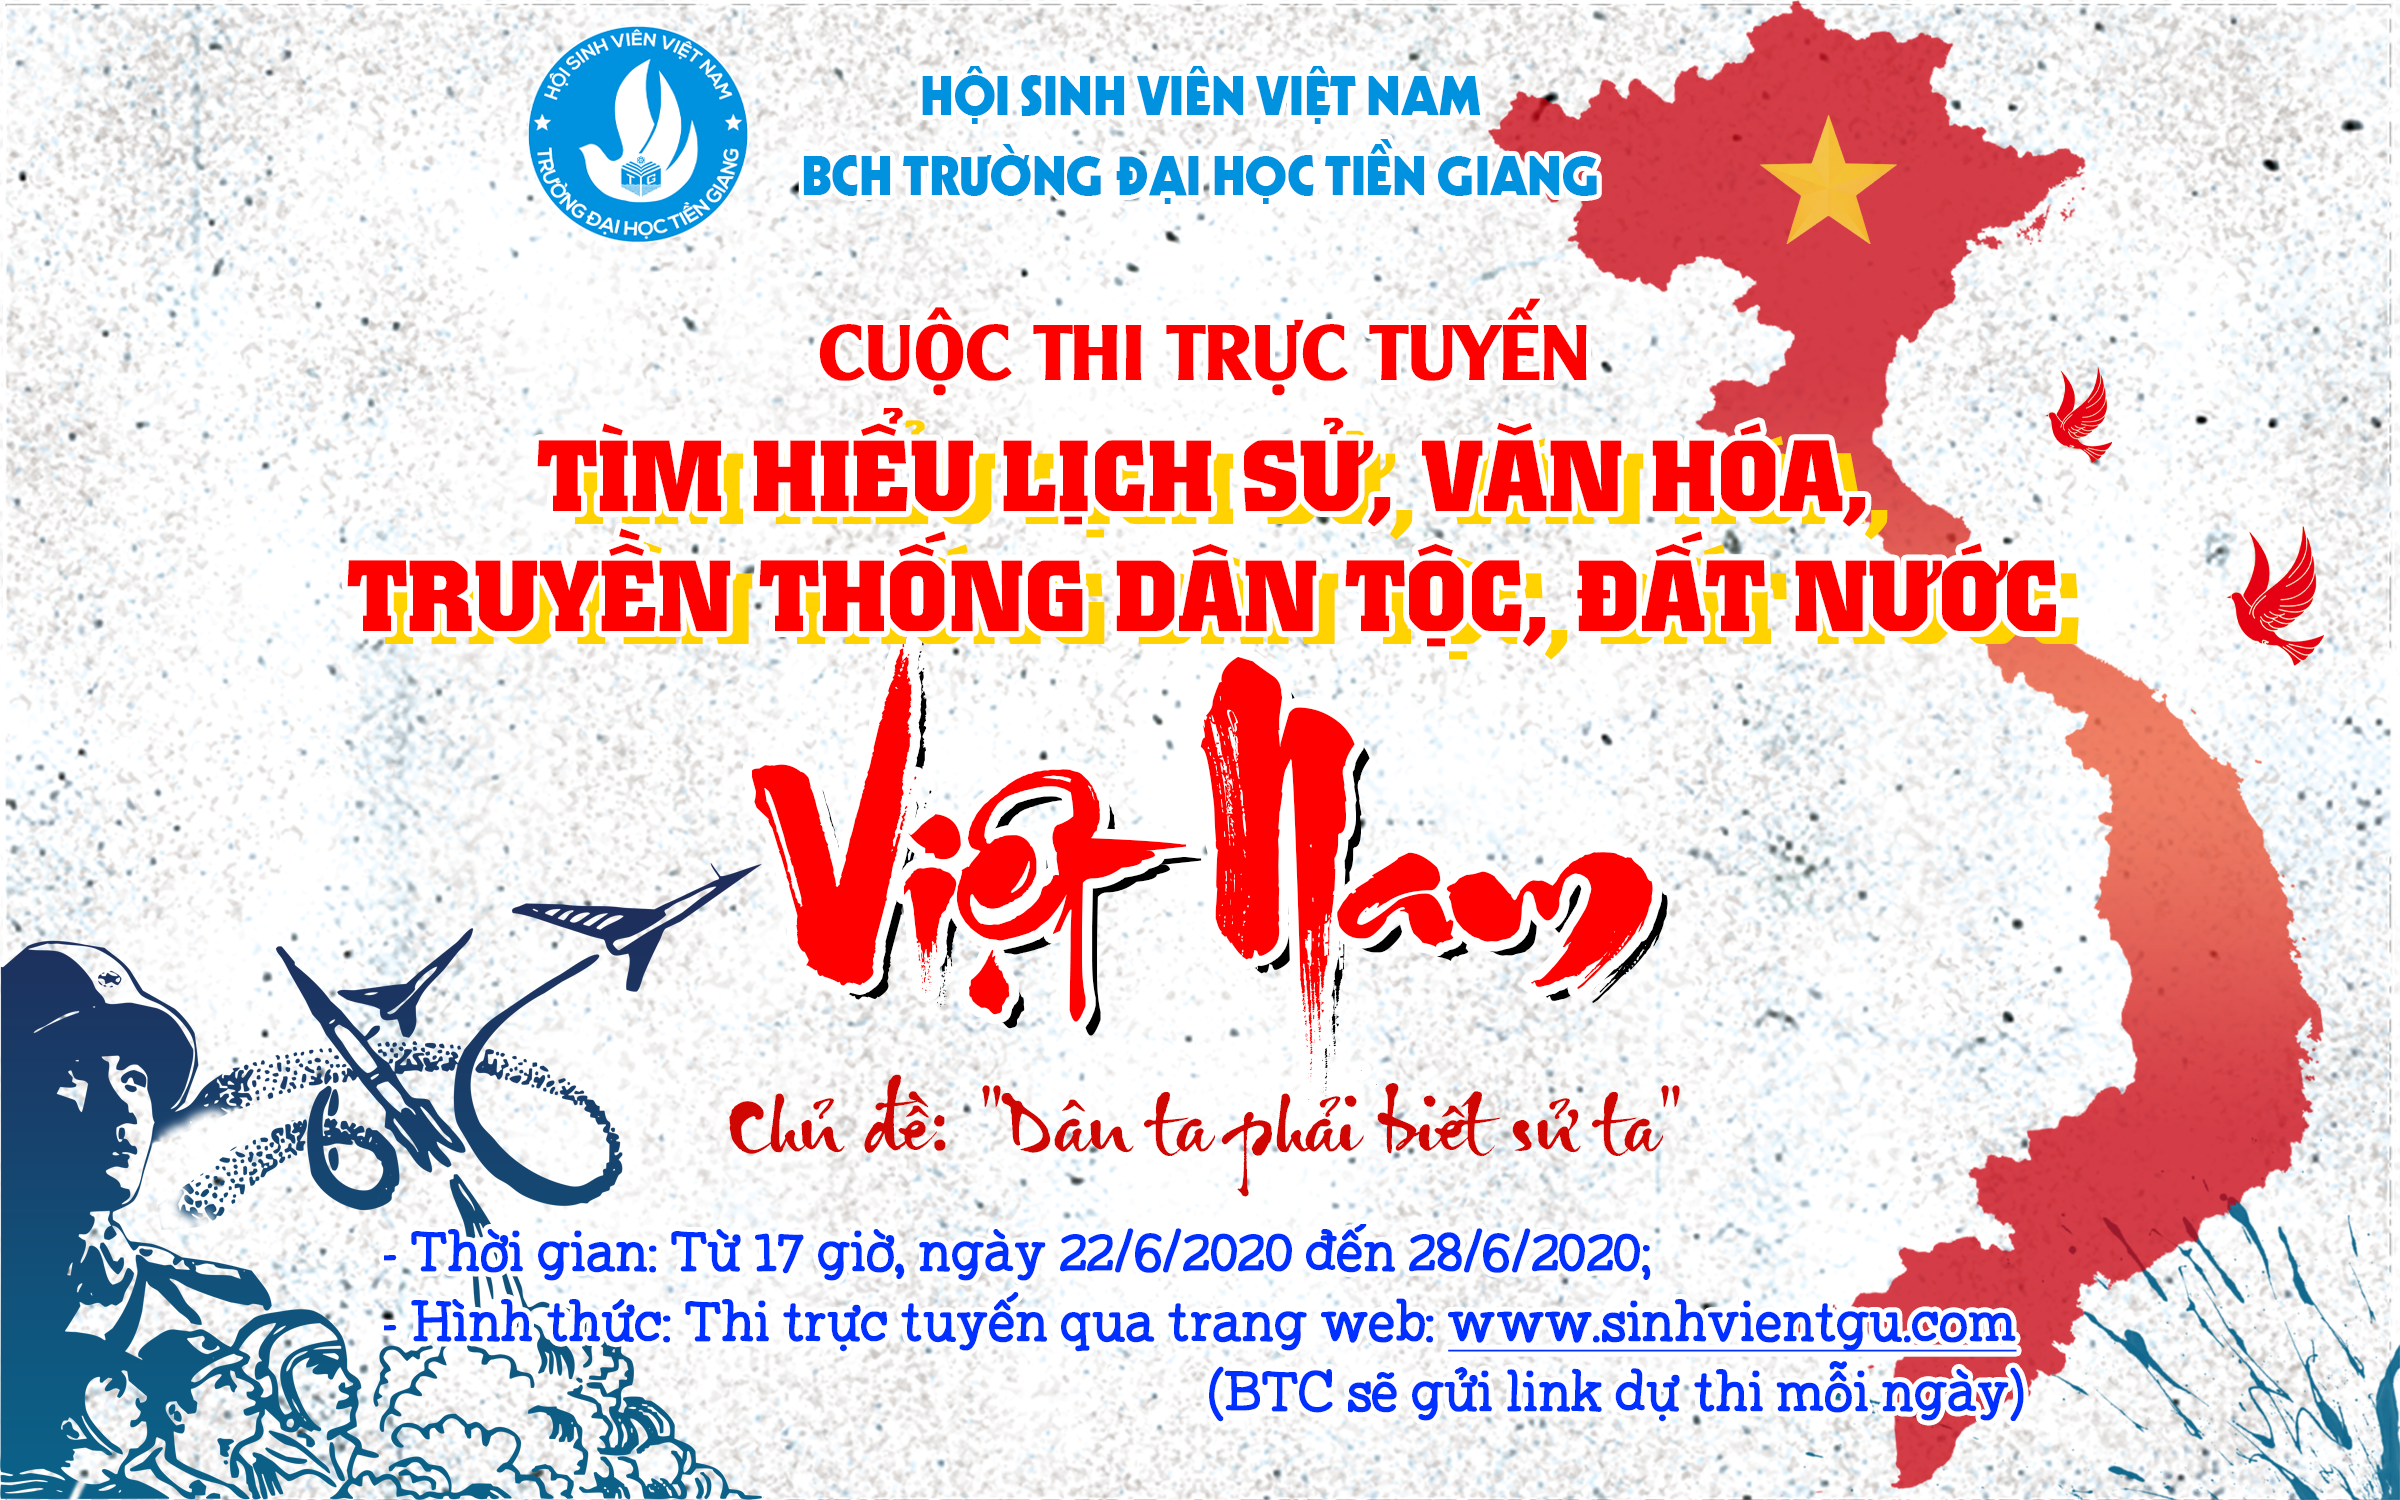 Cuộc thi trực tuyến: Tìm hiểu lịch sử, văn hóa, truyền thống dân tộc, đất nước Việt Nam - Ngày 7